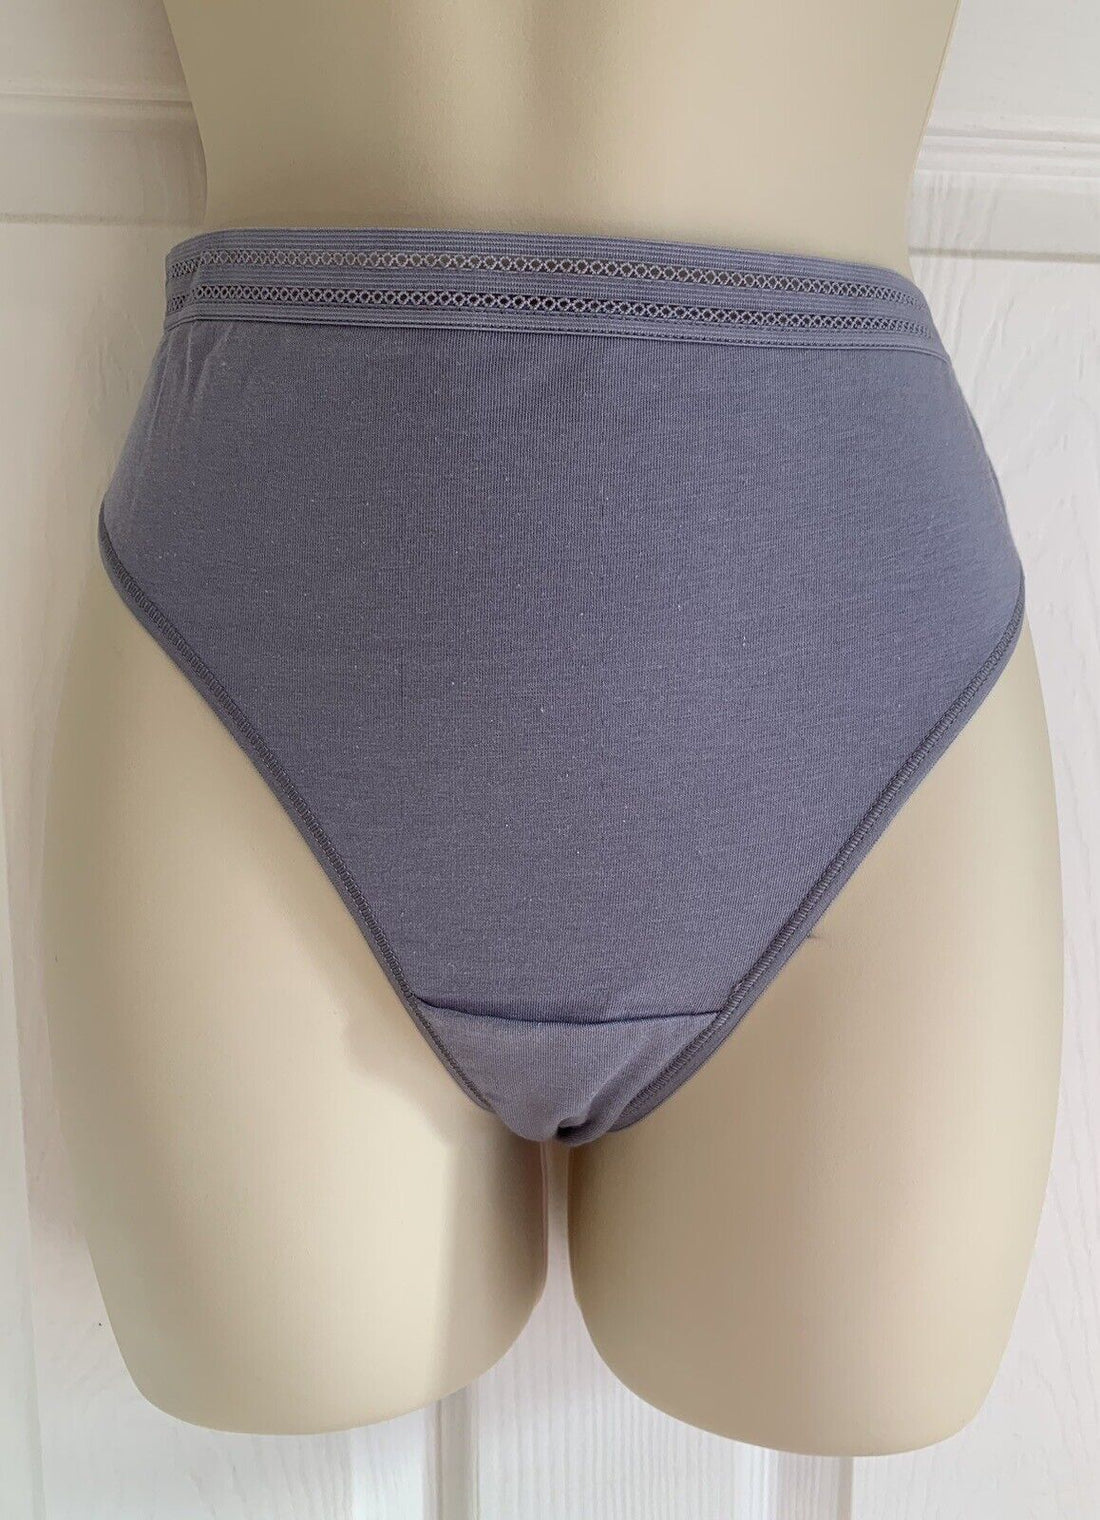 EX M*S Lilac Modal Cotton Blend No VPL Bikini Knickers in Sizes 24, 26, 28